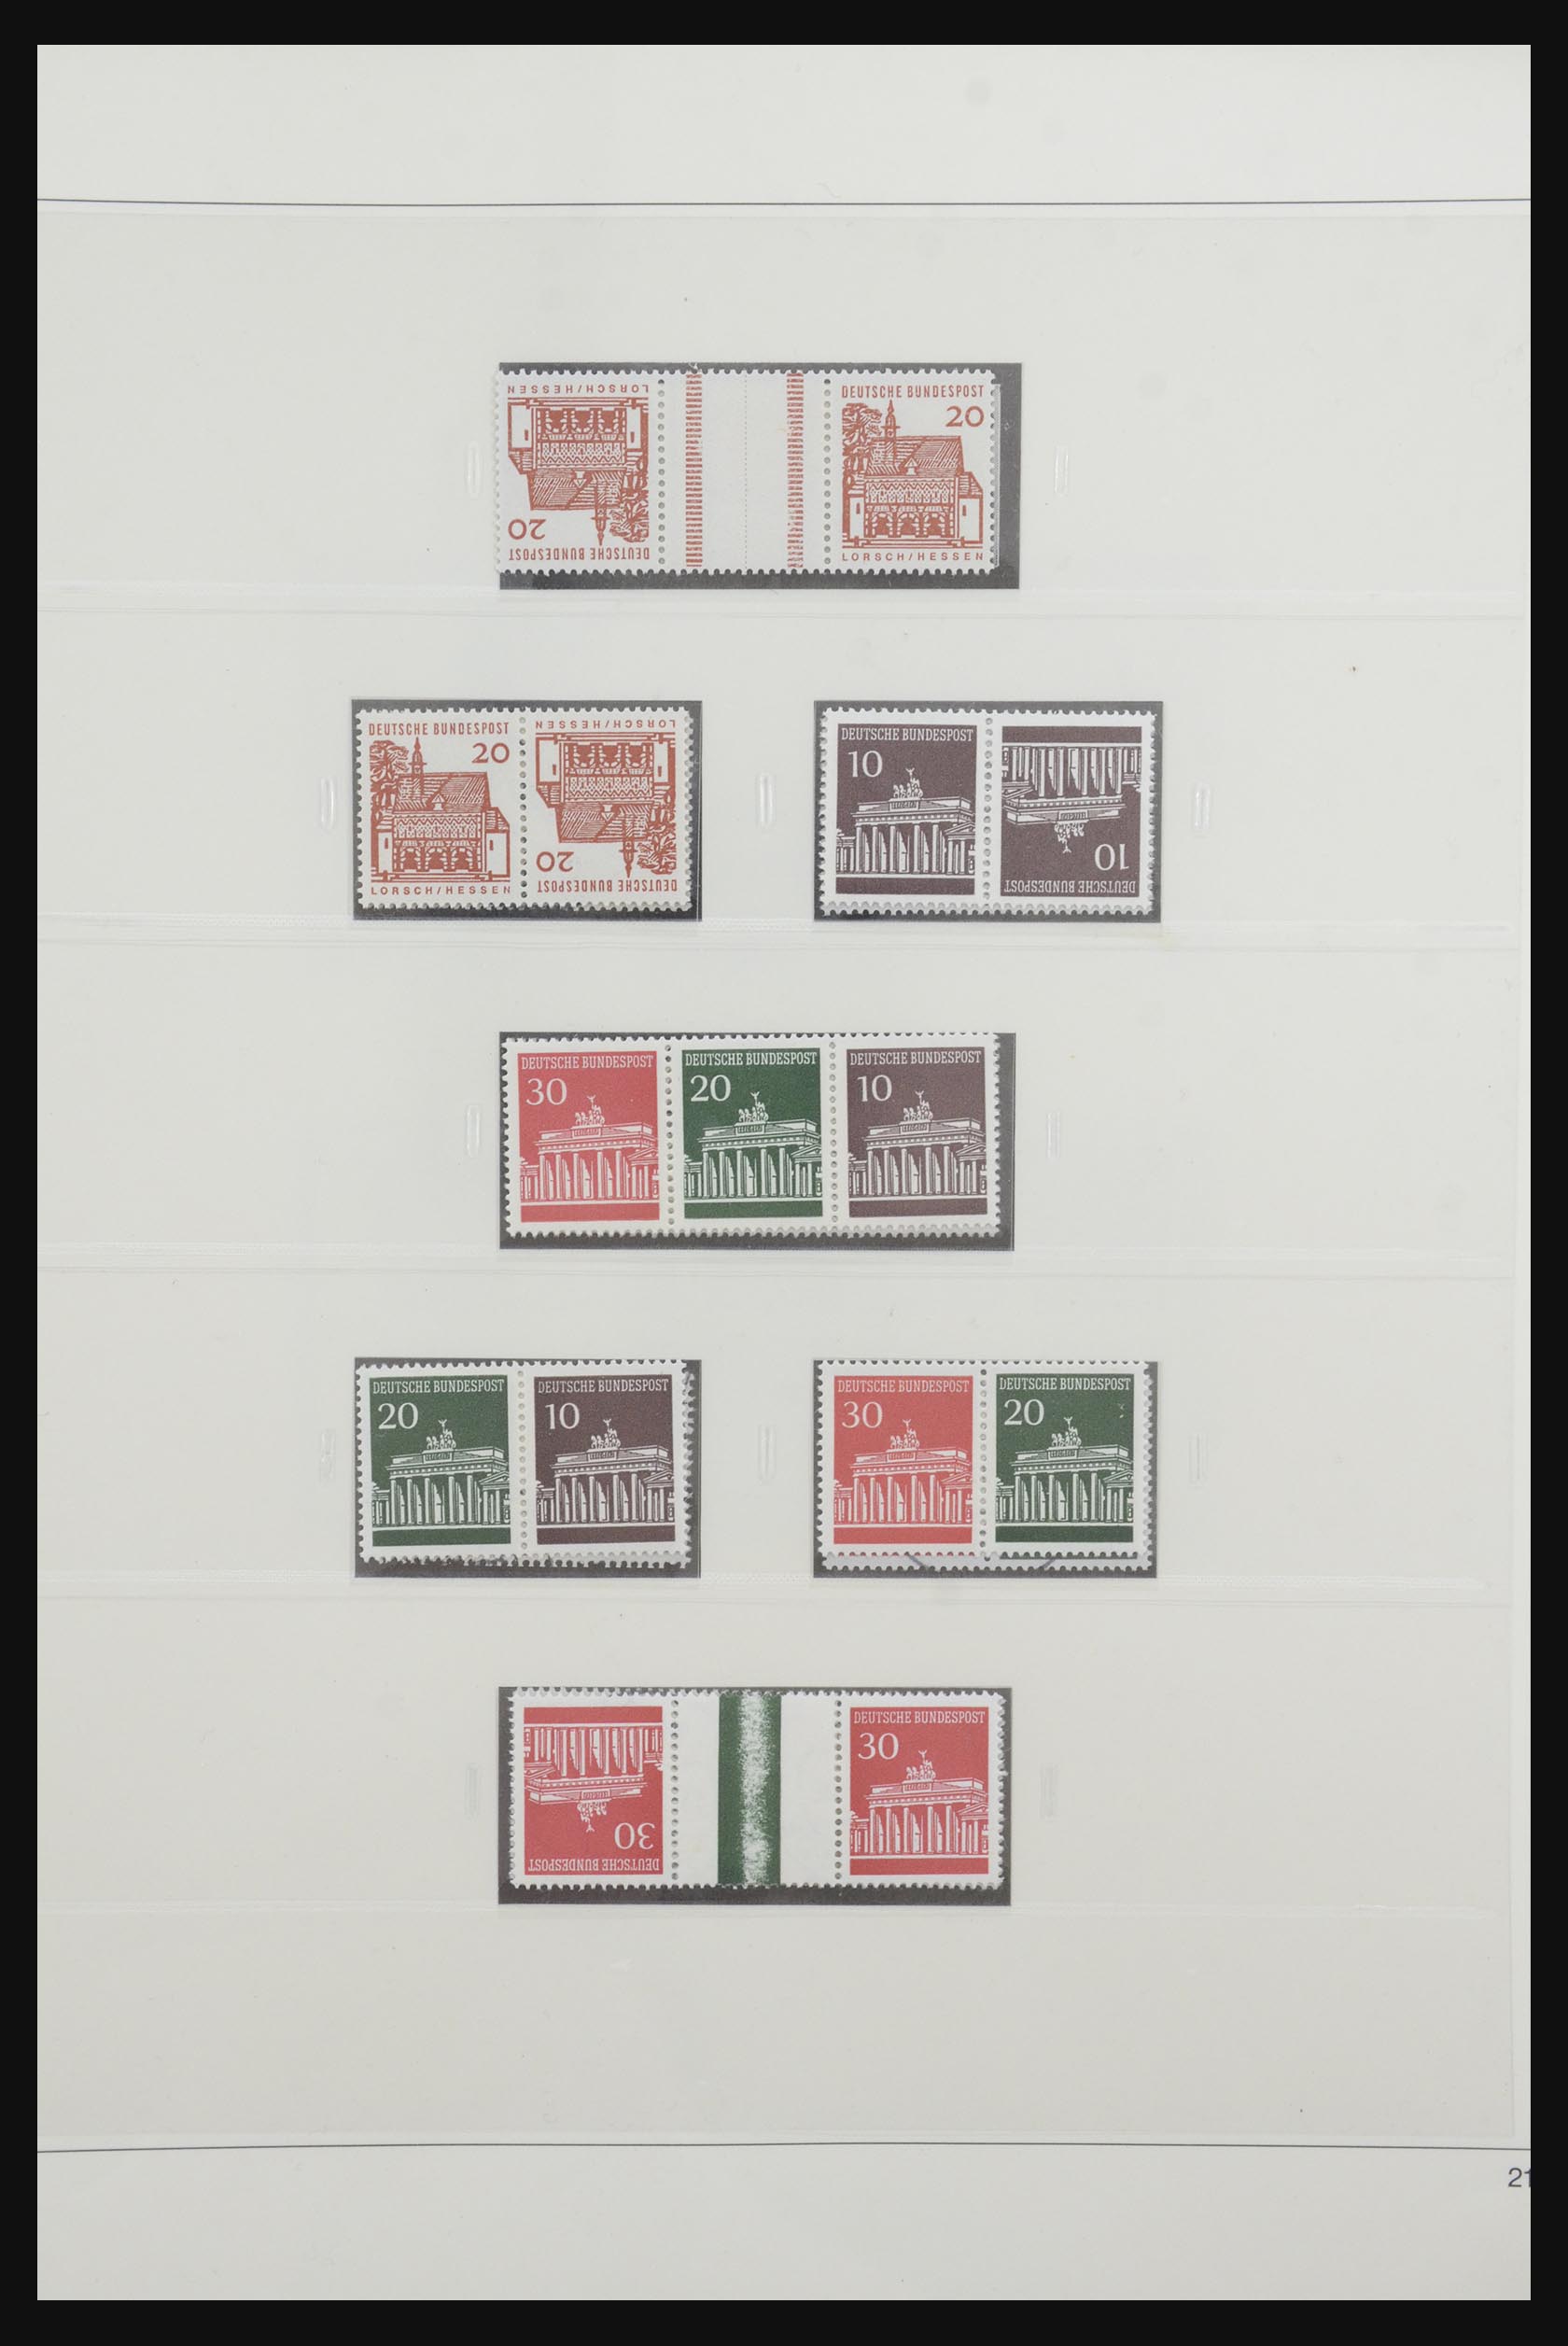 31842 028 - 31842 Bundespost combinaties 1951-2003.